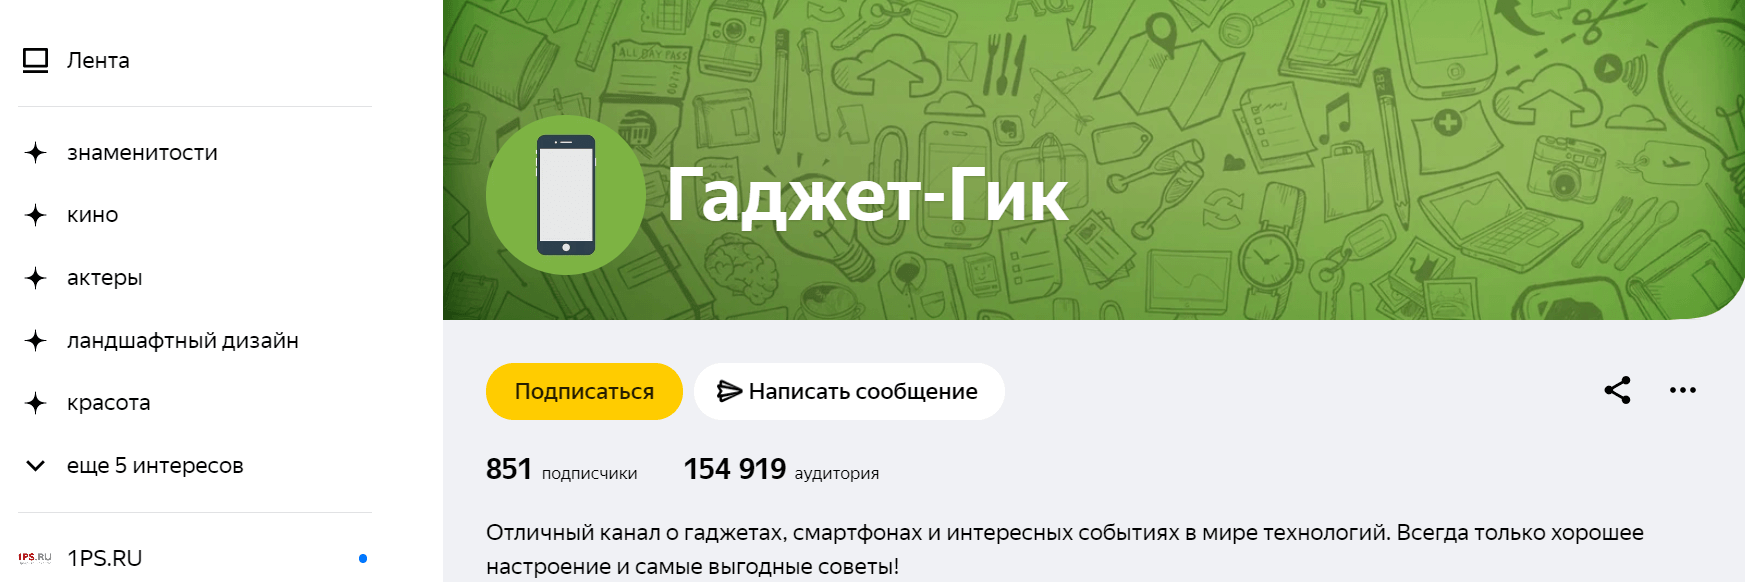 пример оформления канала в Яндекс Дзене